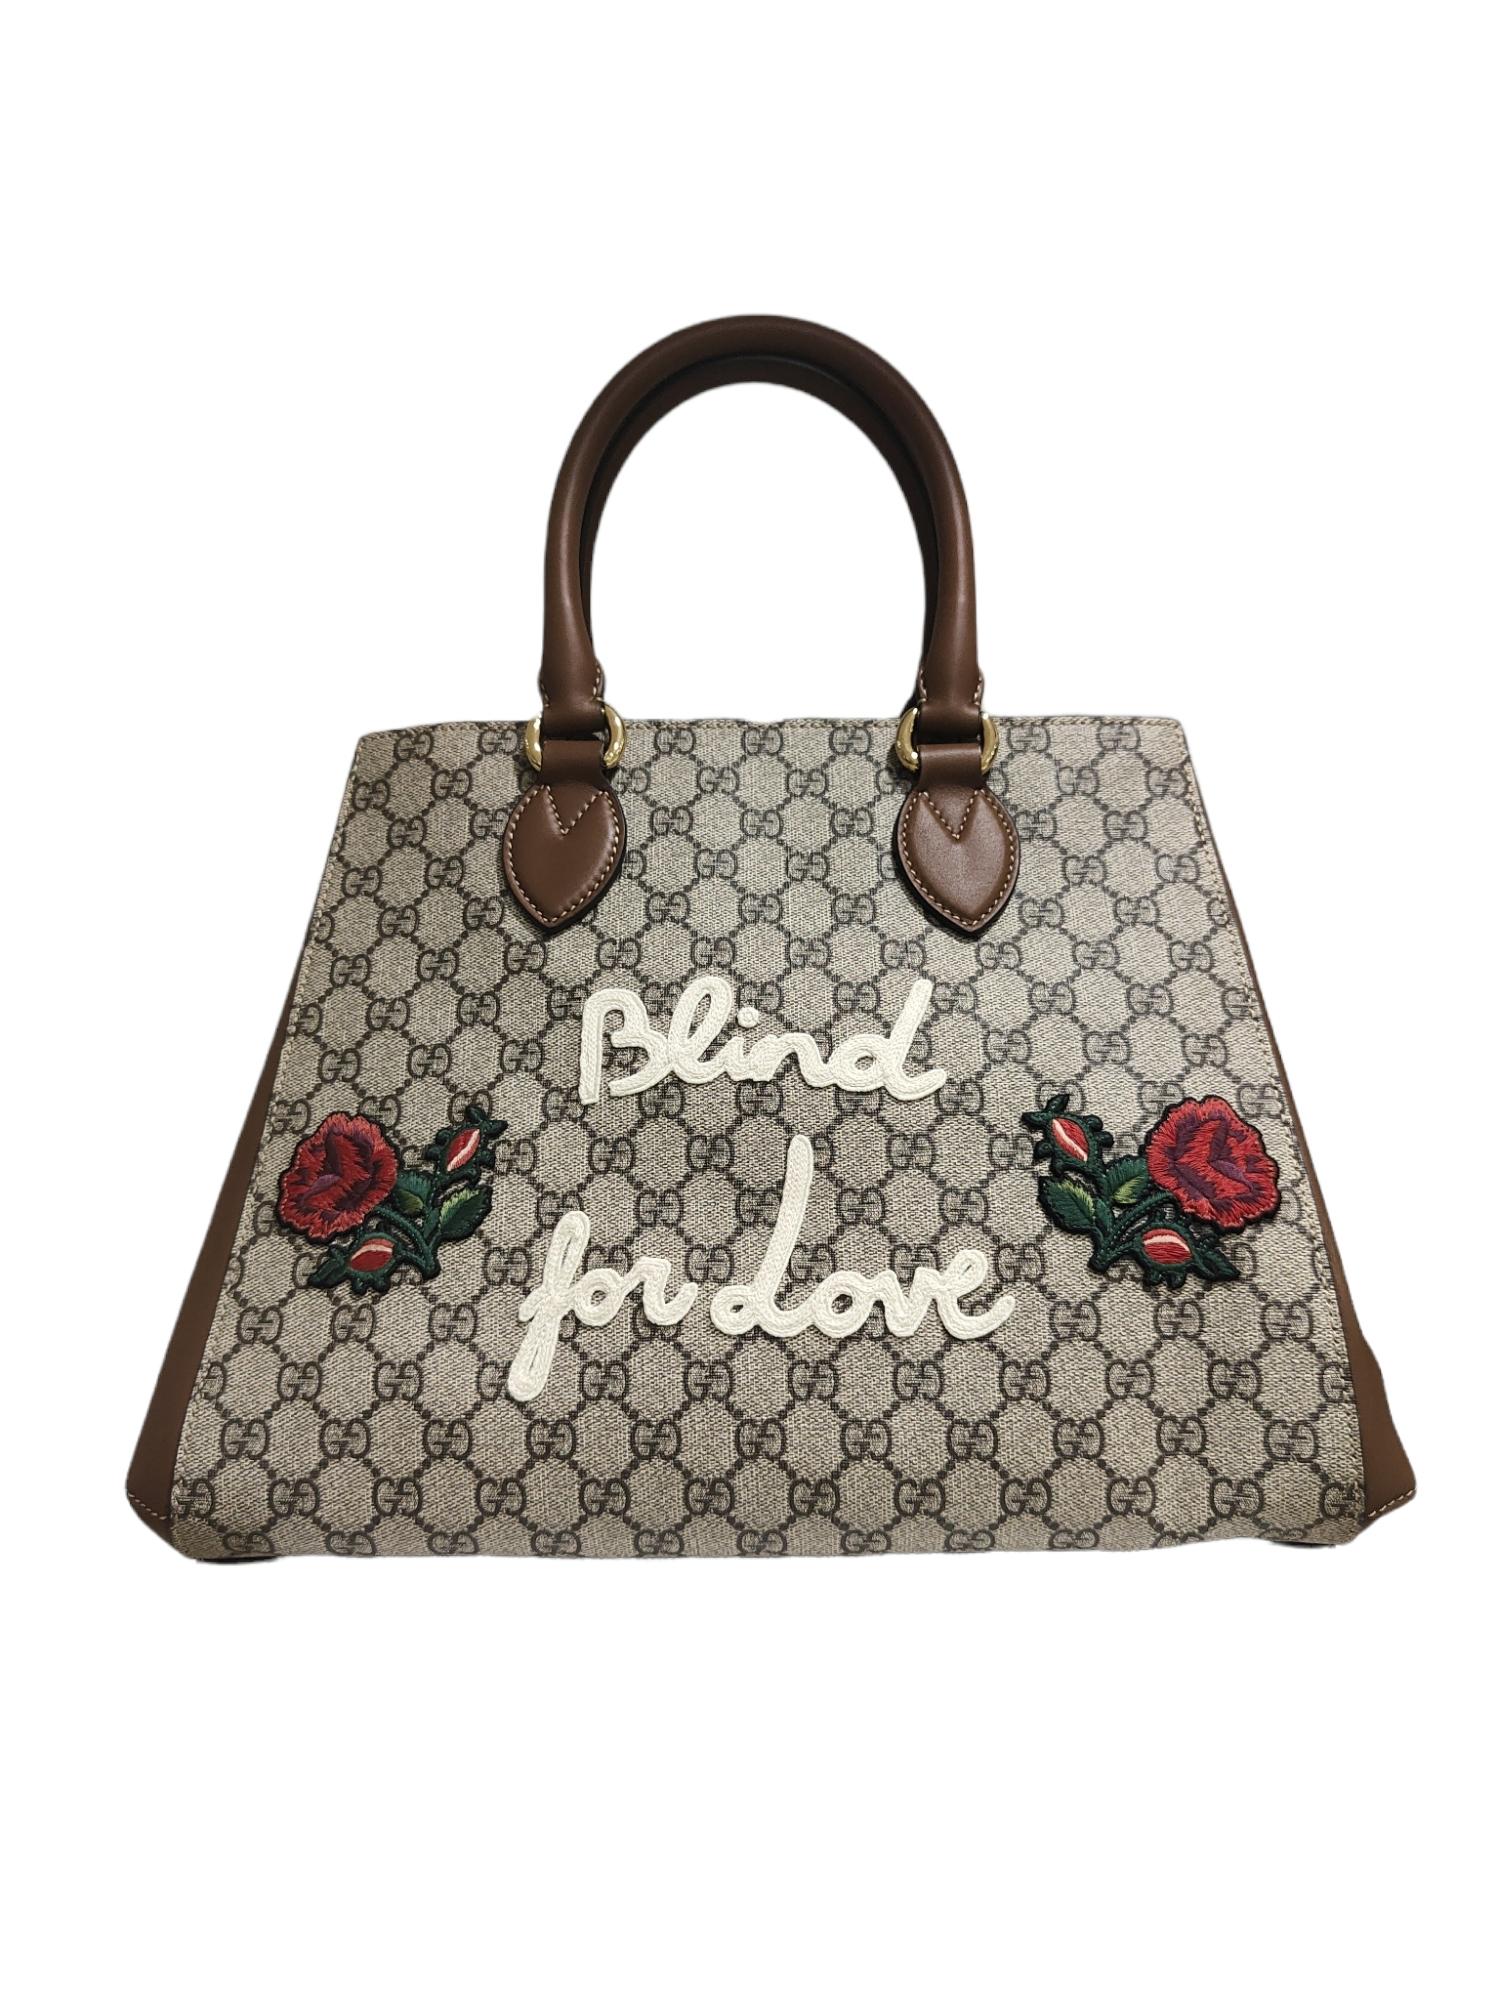 Gucci GG Blind for Love shoulder handbag NWOT 1